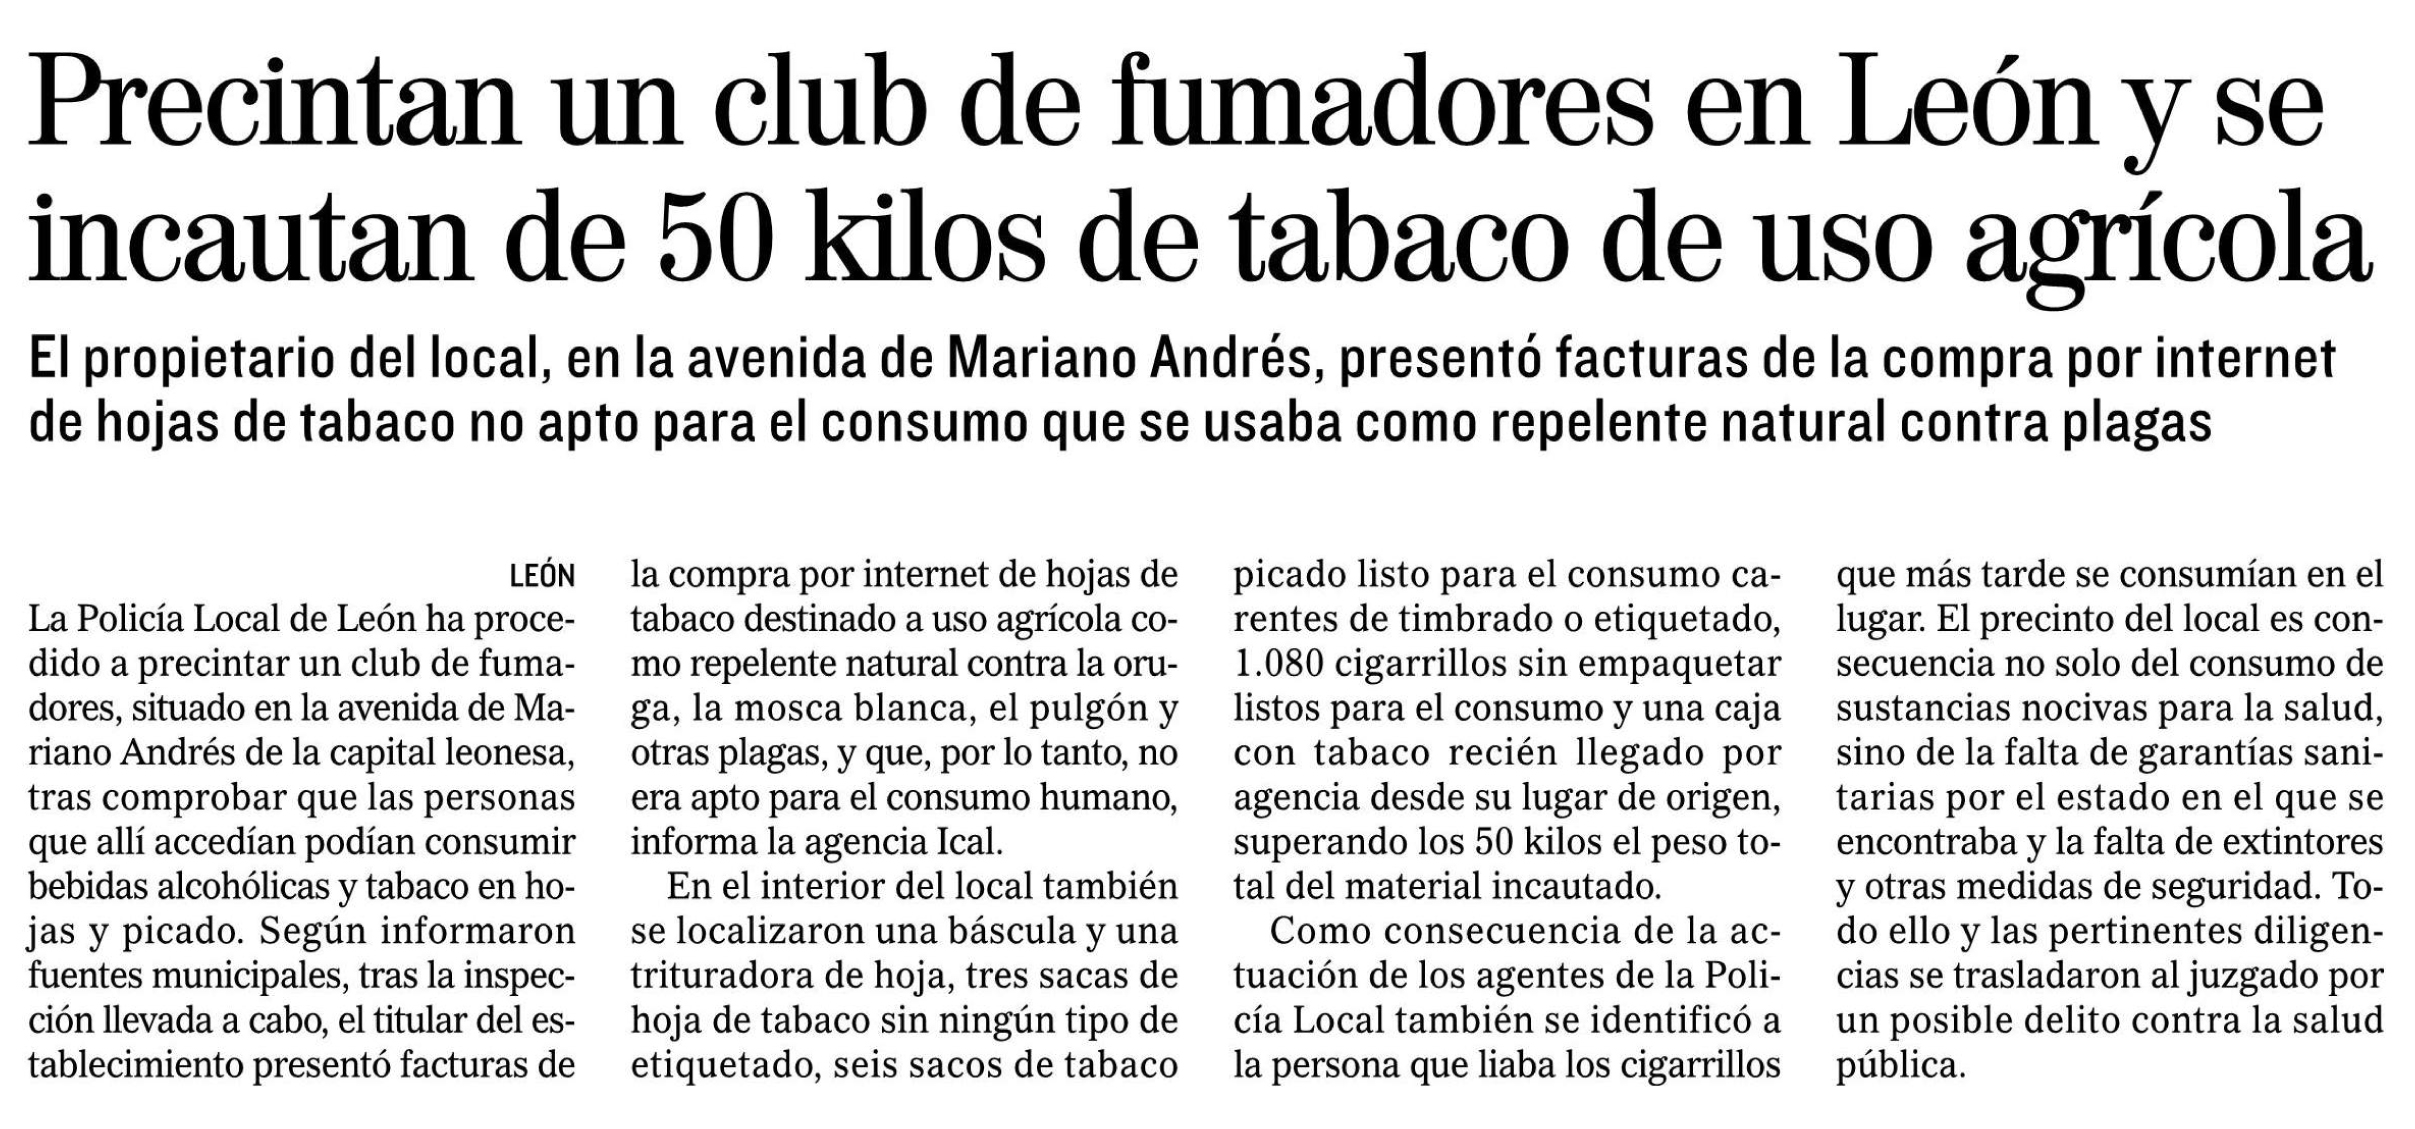 Precintado un club que comercializaba hoja de tabaco picado destinada a matar orugas, moscas y pulgones